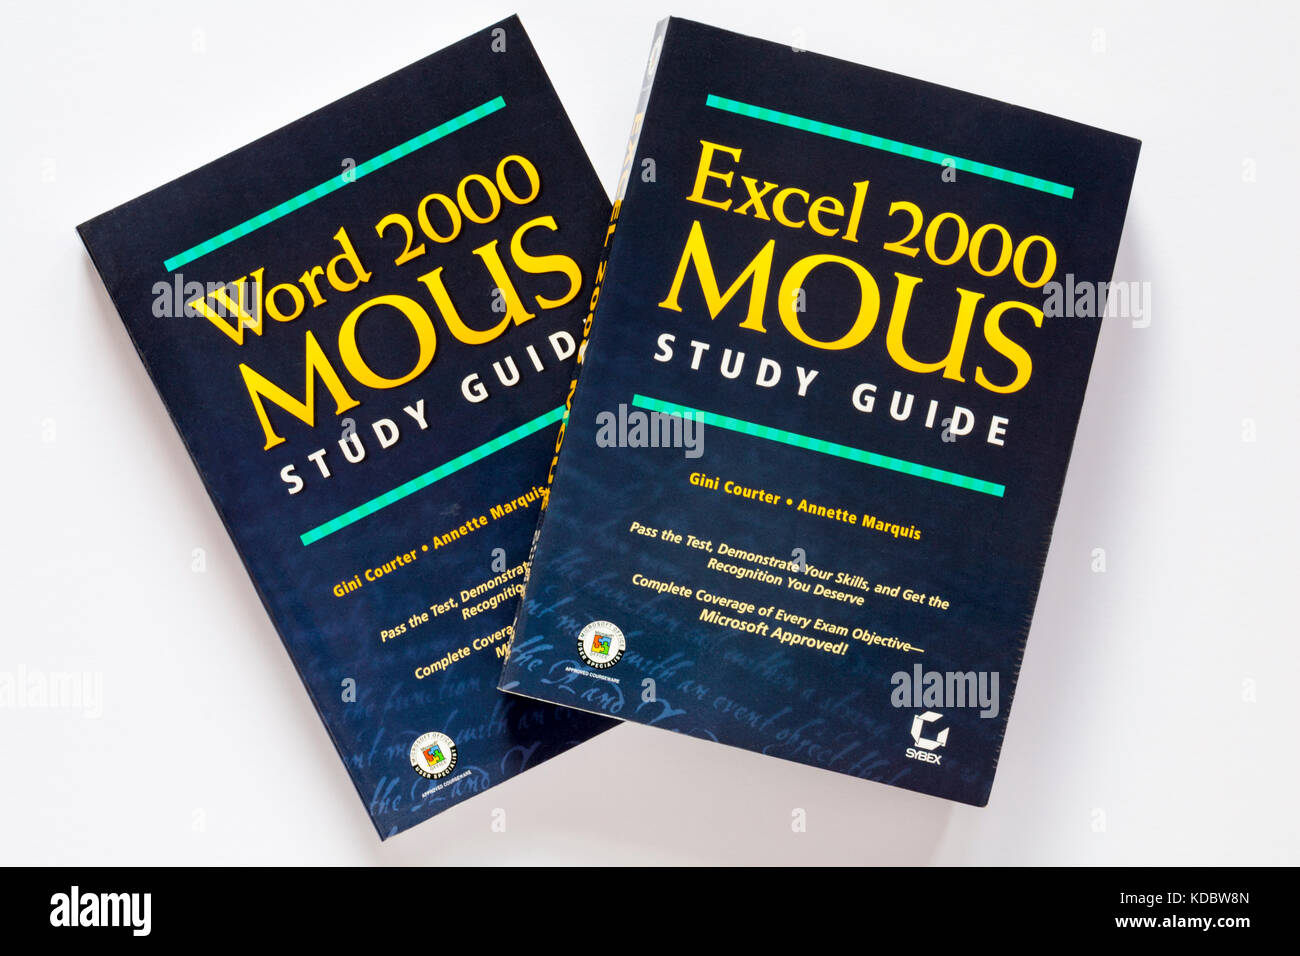 Word 2000 Guide d'étude et des protocoles d'Excel 2000 Protocoles d'étude guide books sur fond blanc Banque D'Images